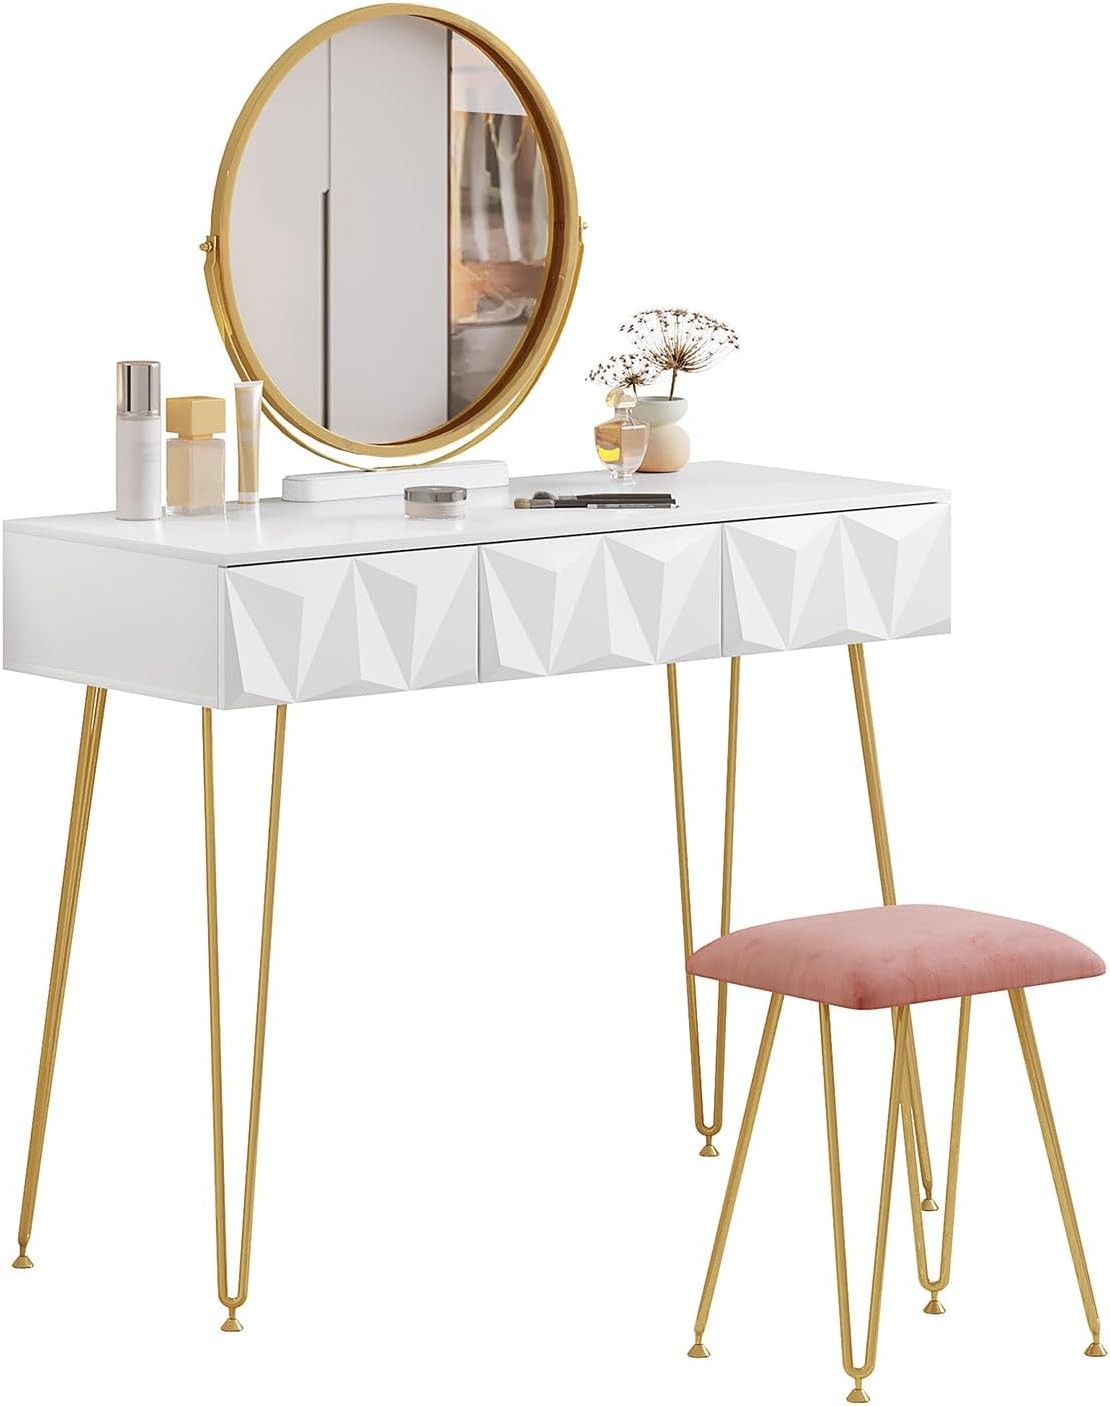 Juego de mesa de tocador, mesa de maquillaje con espejo circular y  taburete, tocador de madera para dormitorio con 4 cajones (color blanco +  madera)